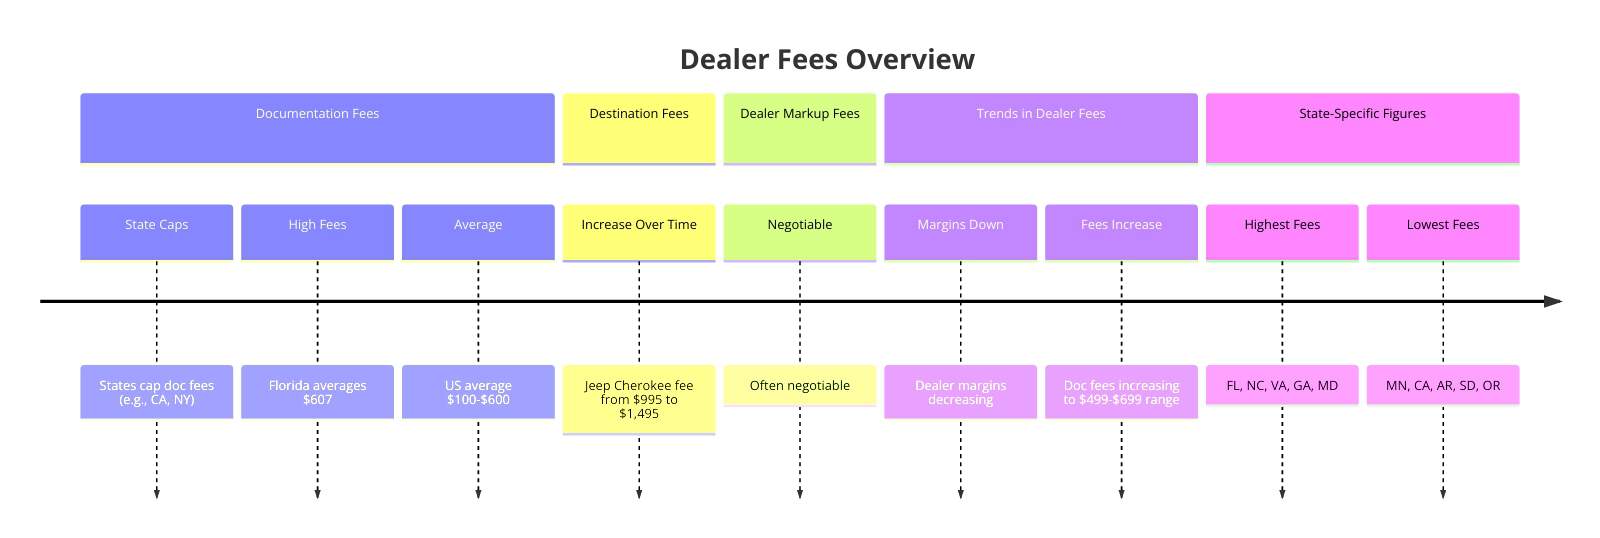 Dealer Fees Overview